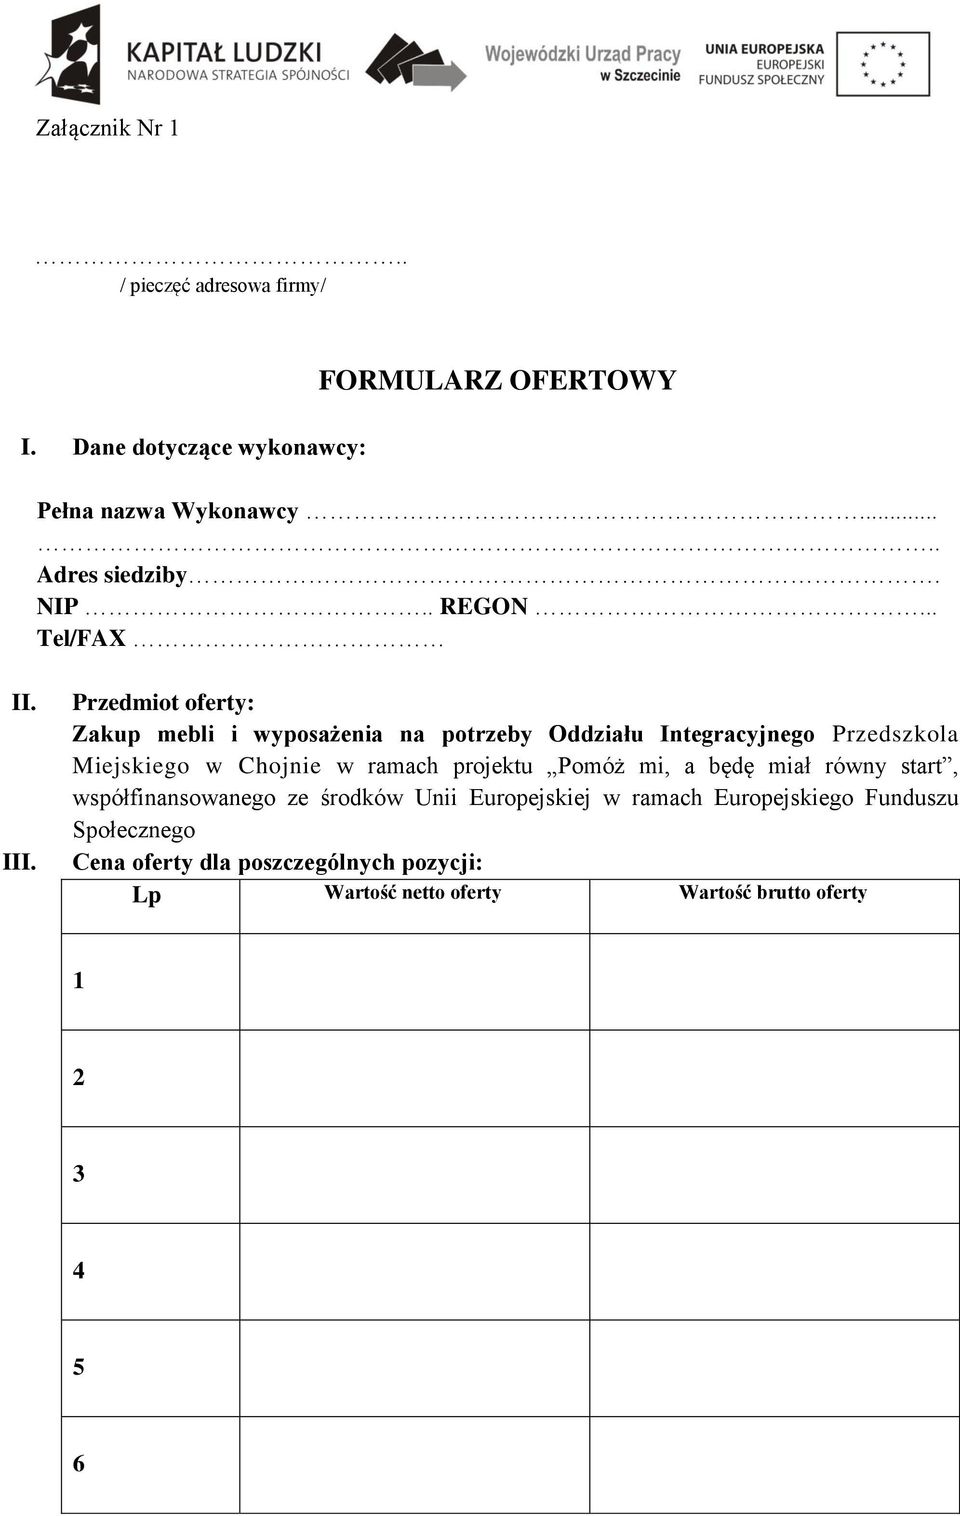 Przedmiot oferty: Zakup mebli i wyposażenia na potrzeby Oddziału Integracyjnego Przedszkola Miejskiego w Chojnie w ramach projektu